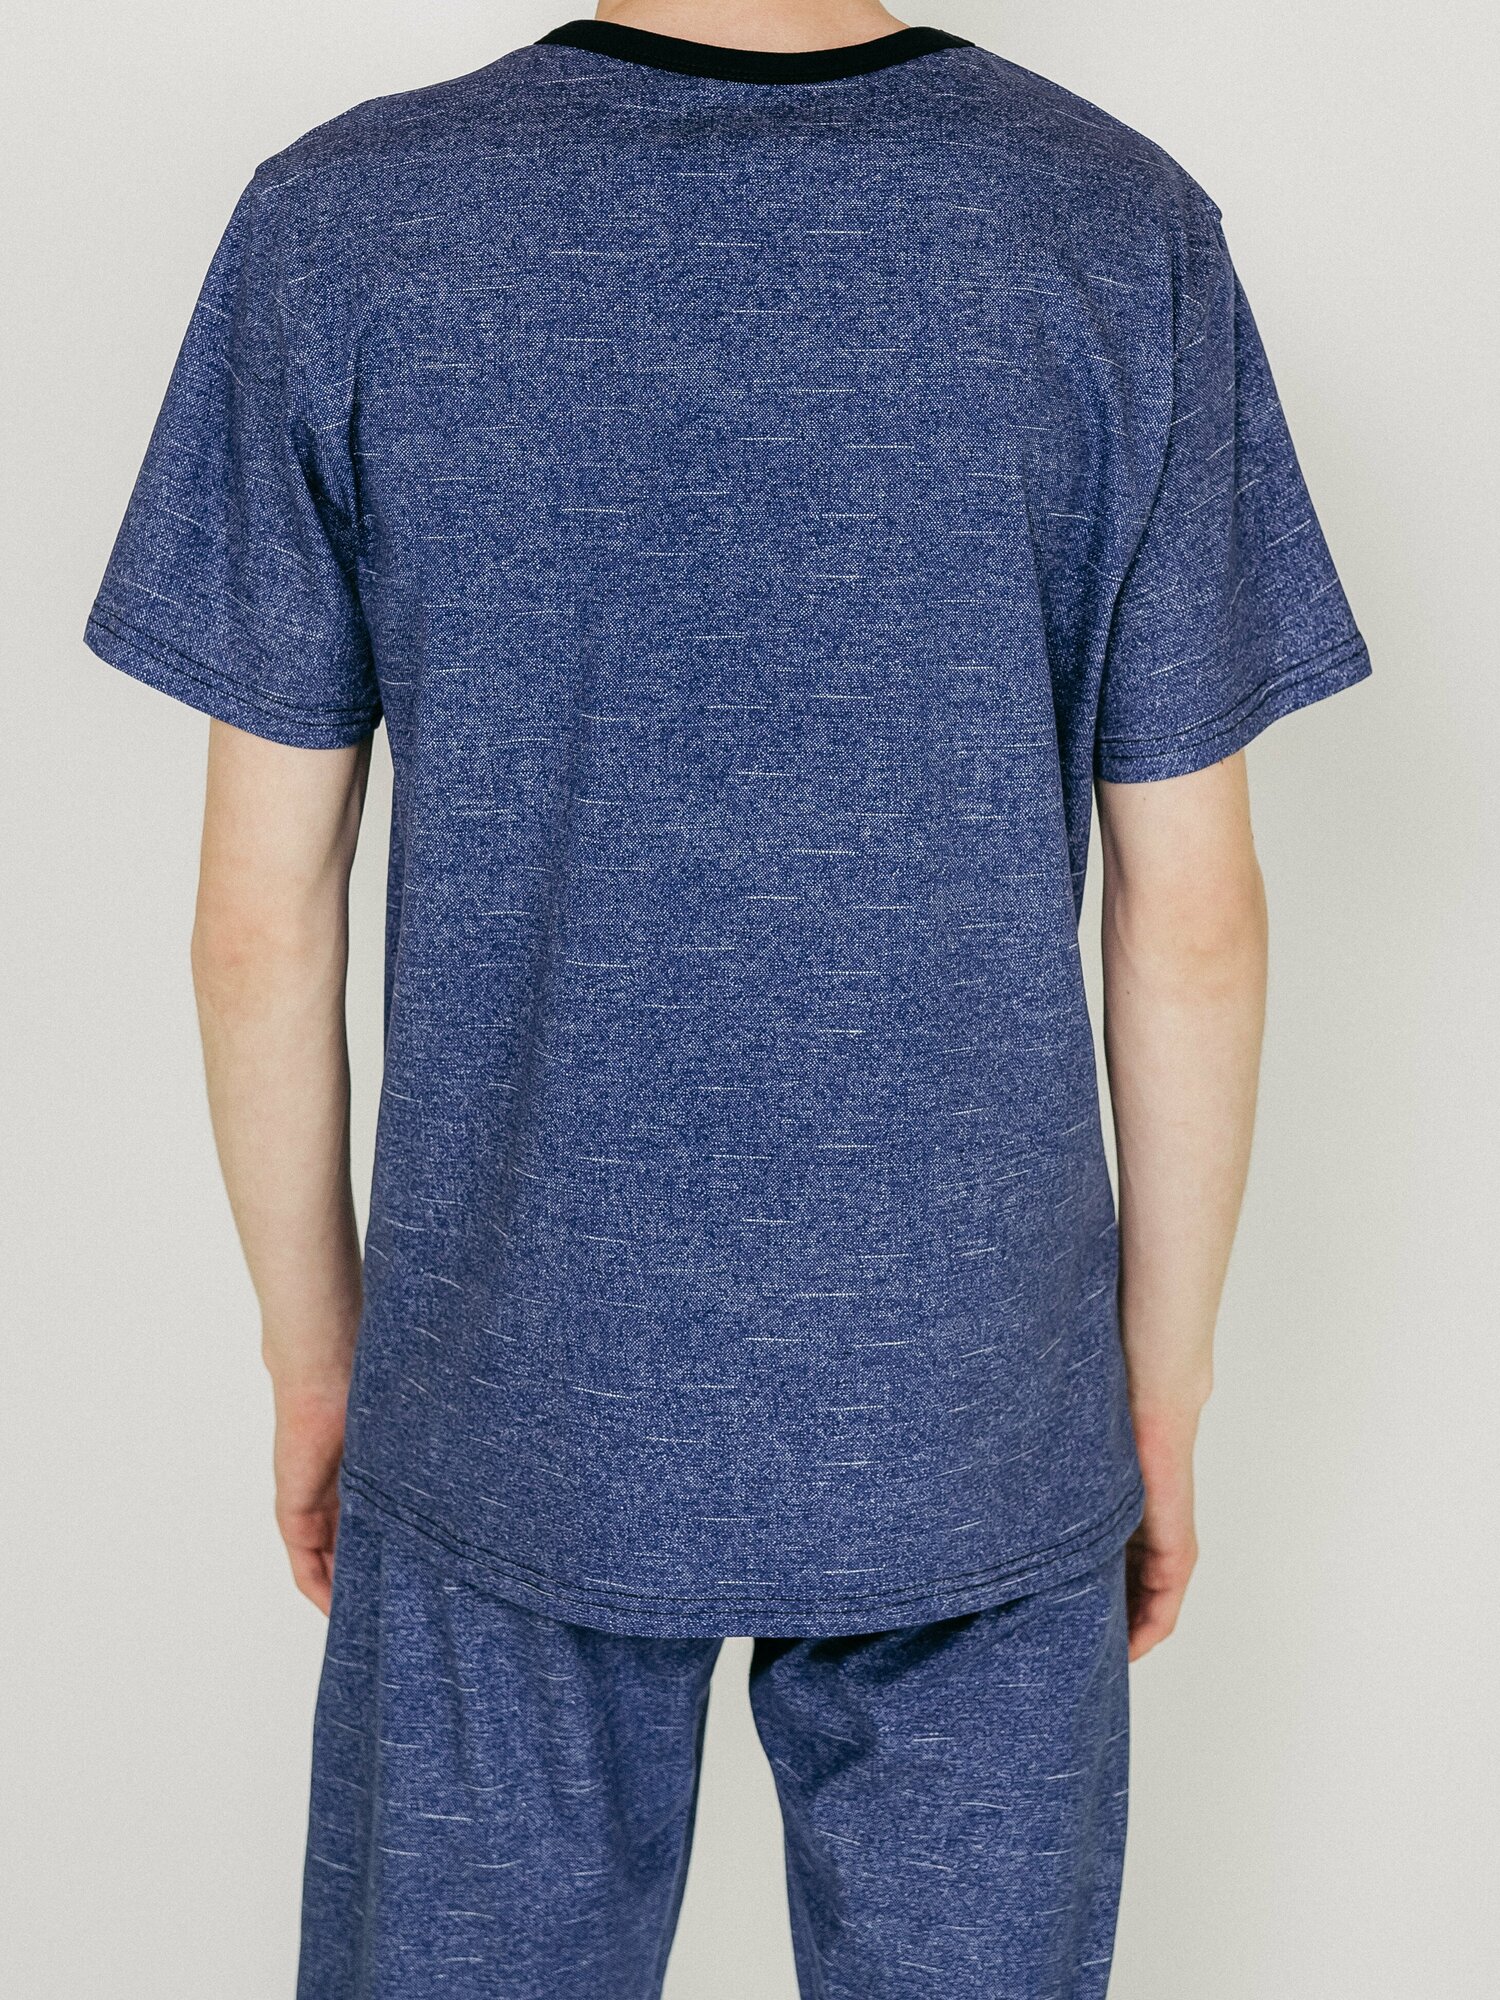 Мужская пижама, мужской пижамный комплект ARISTARHOV, Футболка + Шорты, Синий джинс, размер 54 - фотография № 5